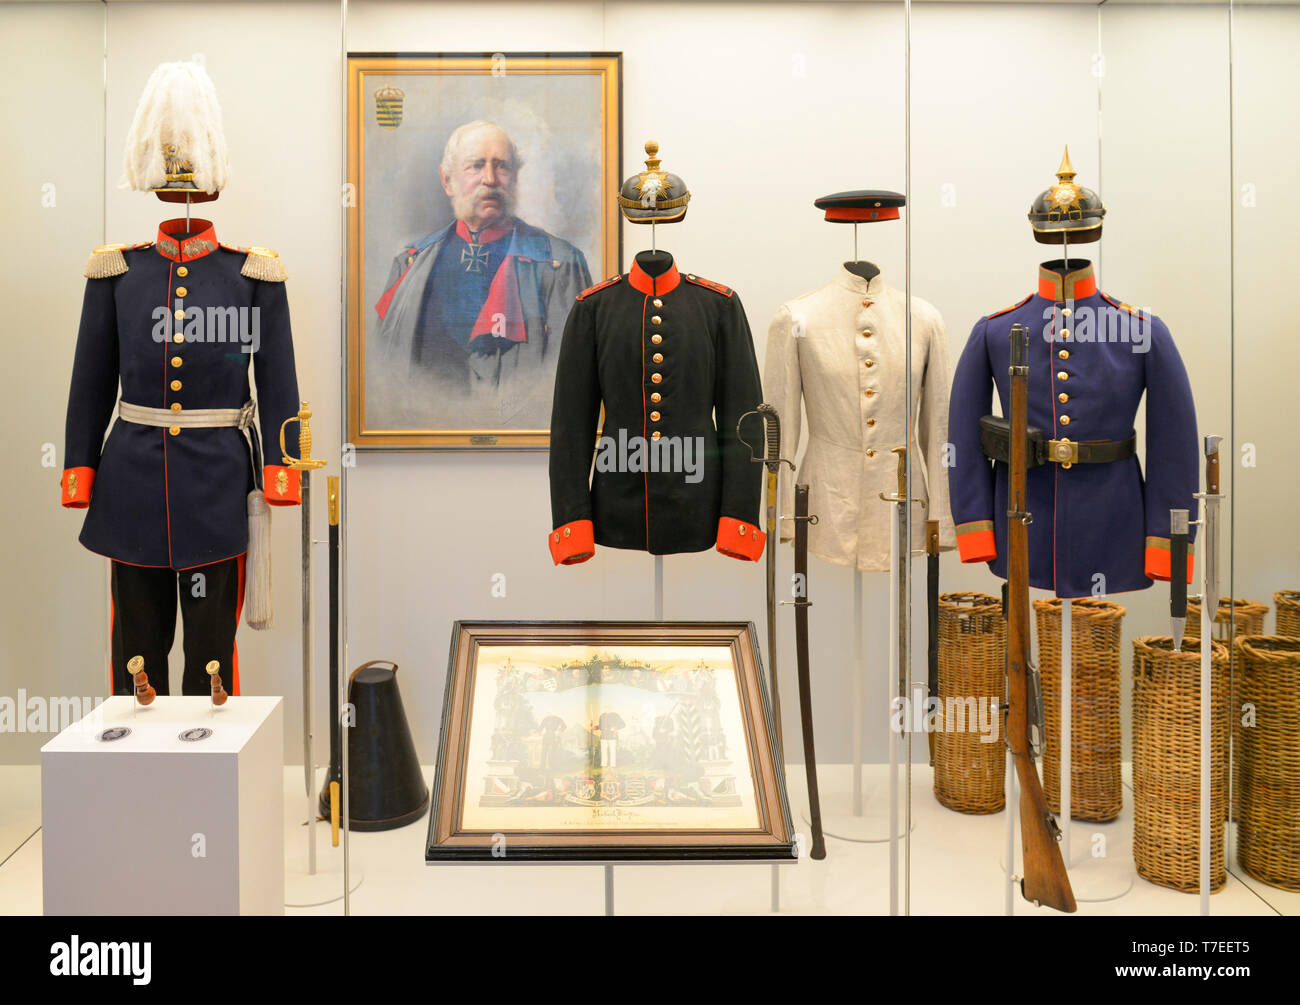 Uniformen, Dauerausstellung, Festung Koenigstein, Saechsische Schweiz, Sachsen, Deutschland, Burg K÷nigstein Foto Stock